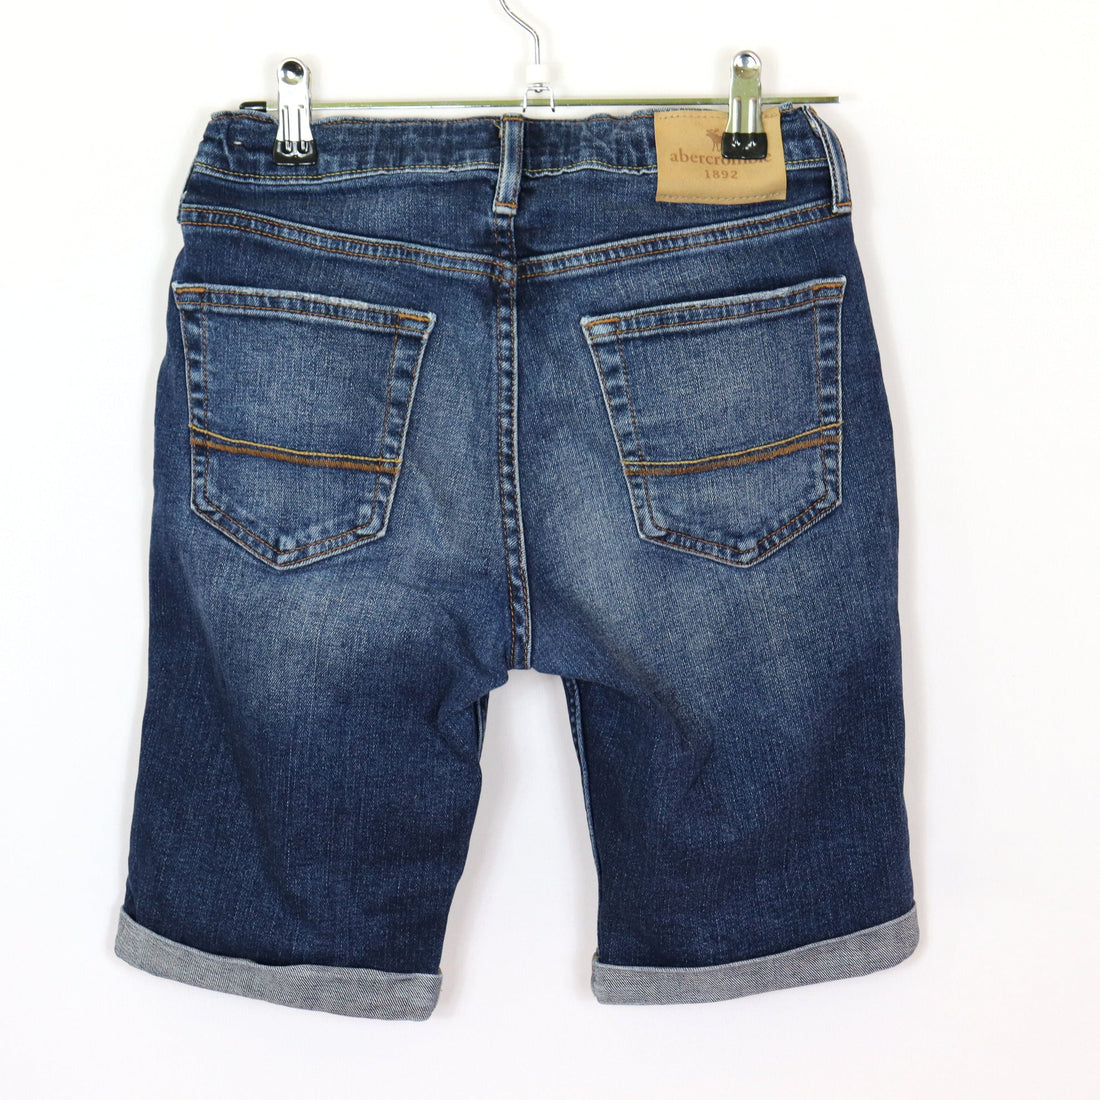 Jeans - Abercrombie - Short - 152 - blau - Boy - sehr guter Zustand